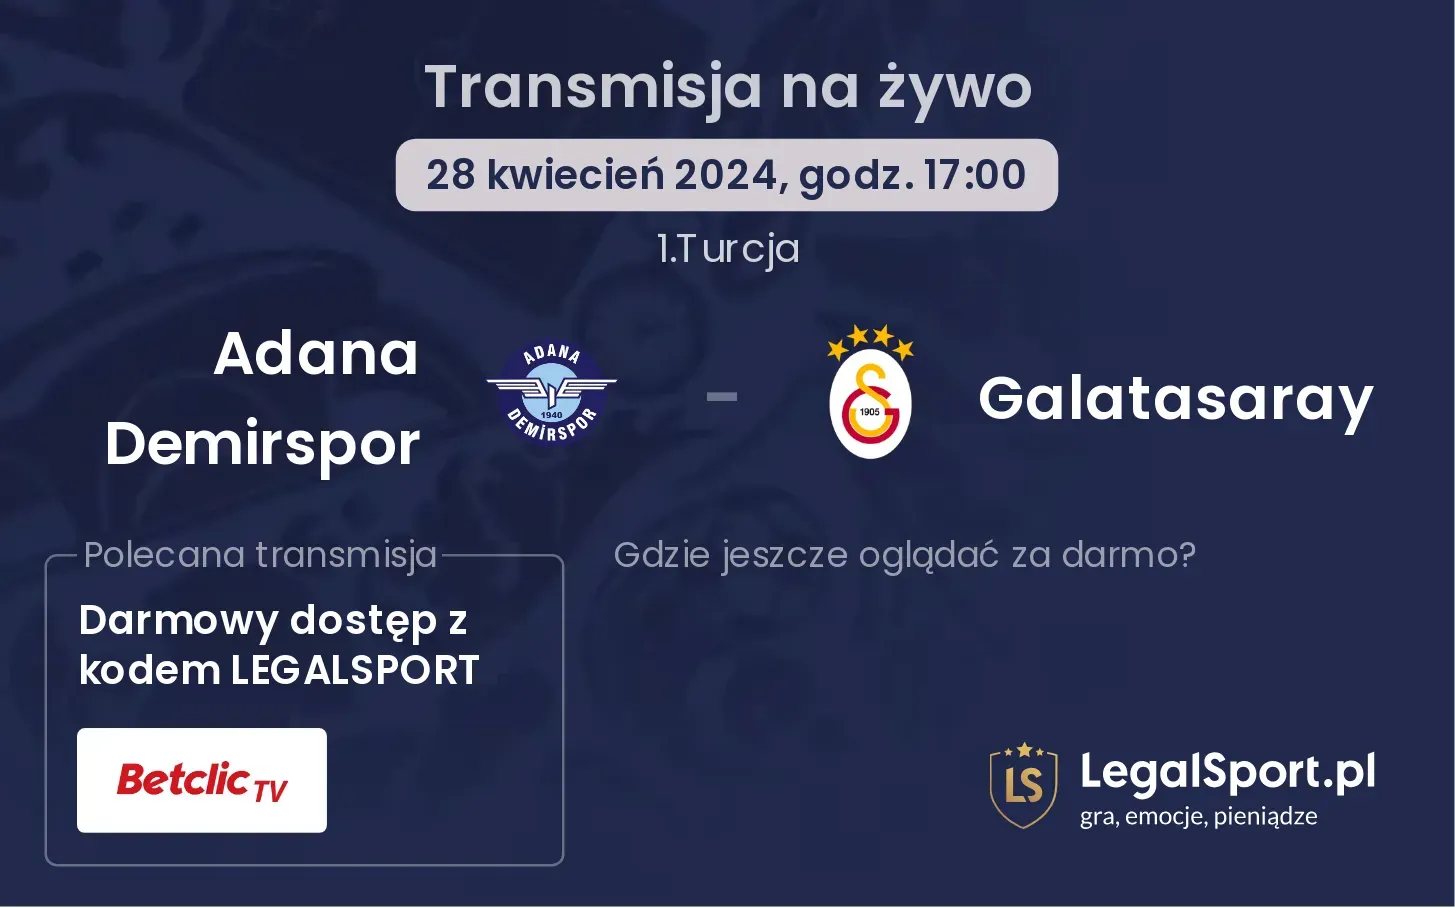 Adana Demirspor - Galatasaray transmisja na żywo